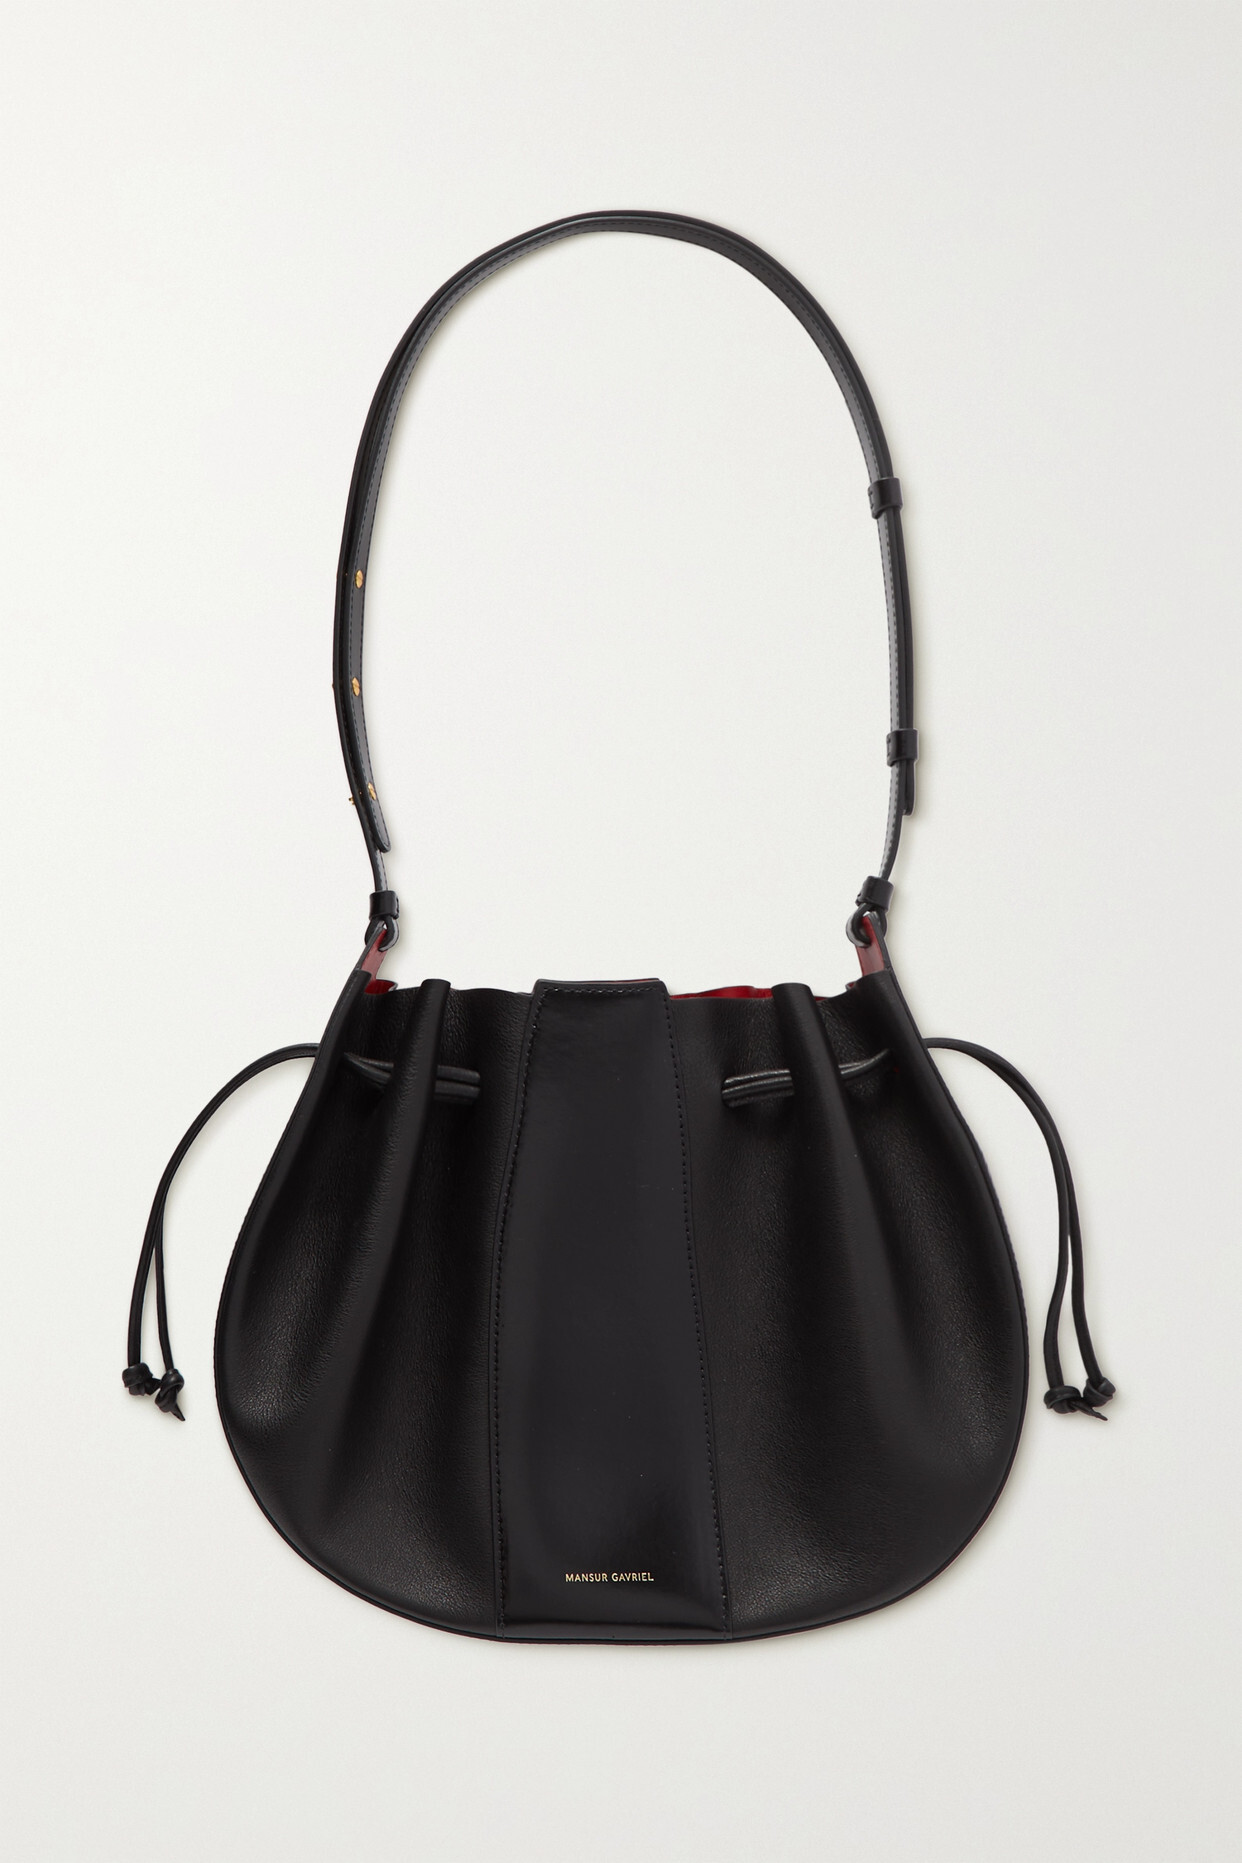 Mansur Gavriel - Lilium Smooth And Textured-leather Shoulder Bag - Black